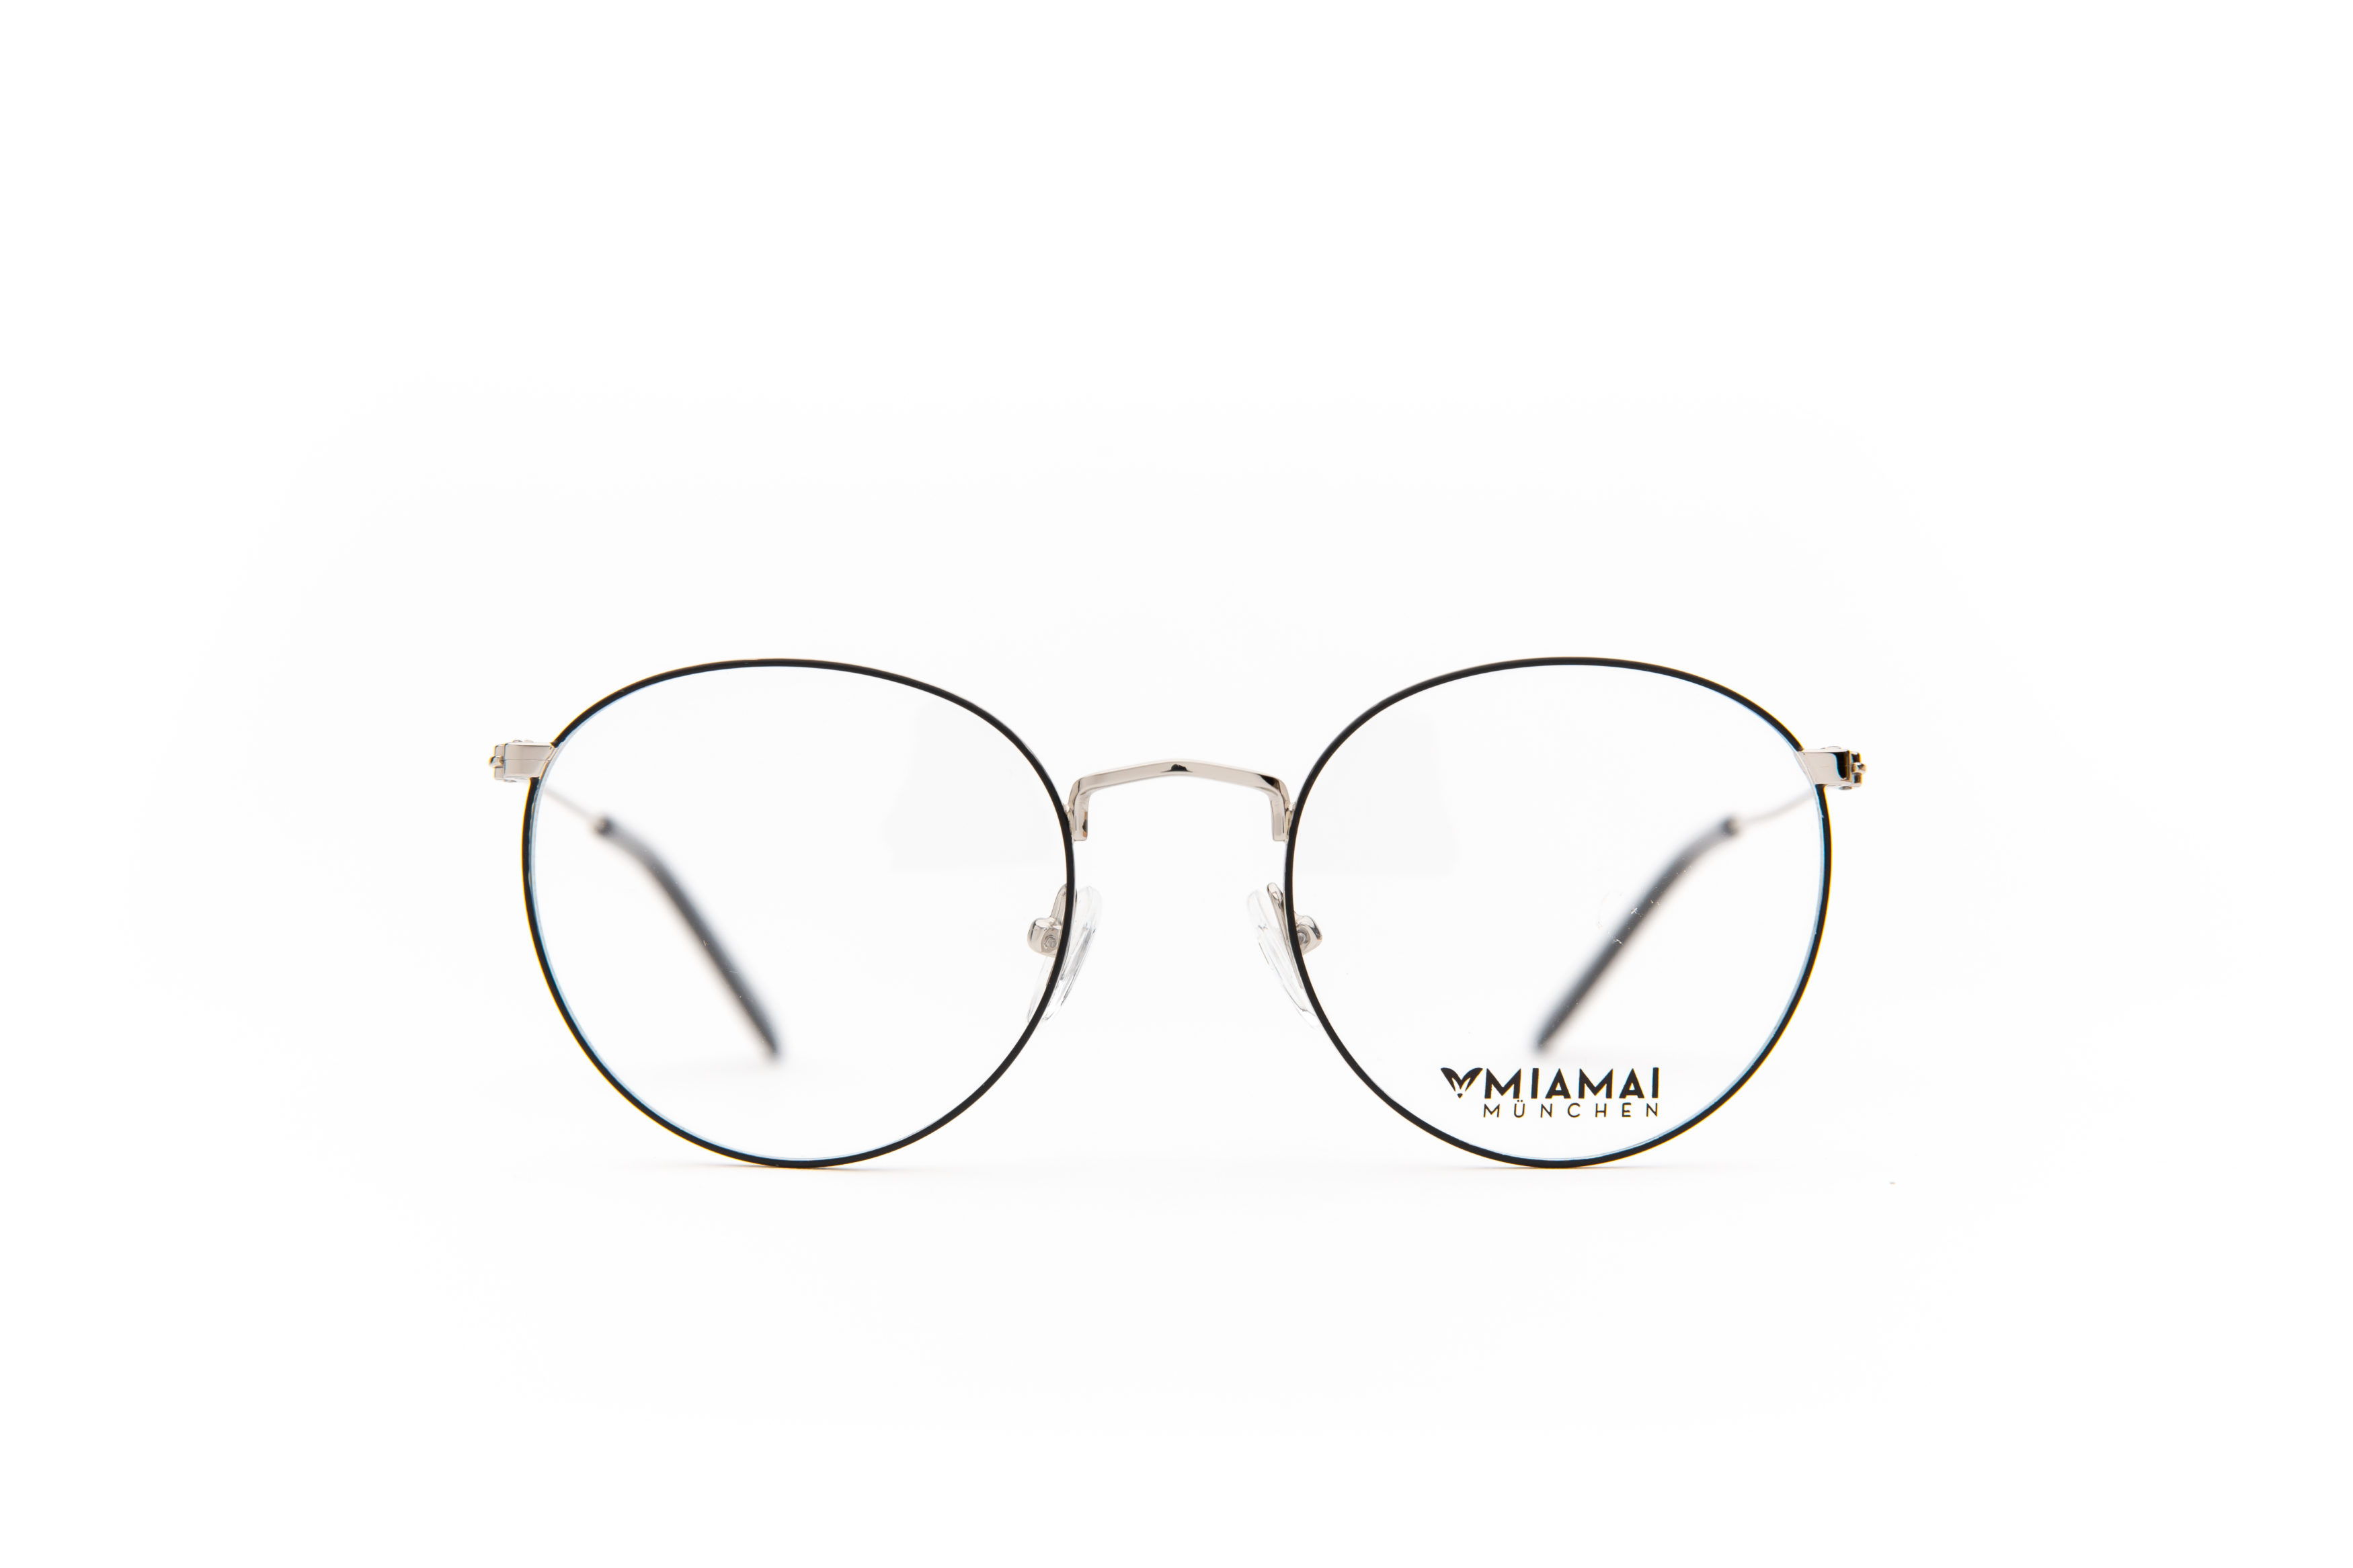 20 Sonnenbrille Damenbrille in Schwarz/Silber Damenbrillen Sonnenbrillen 